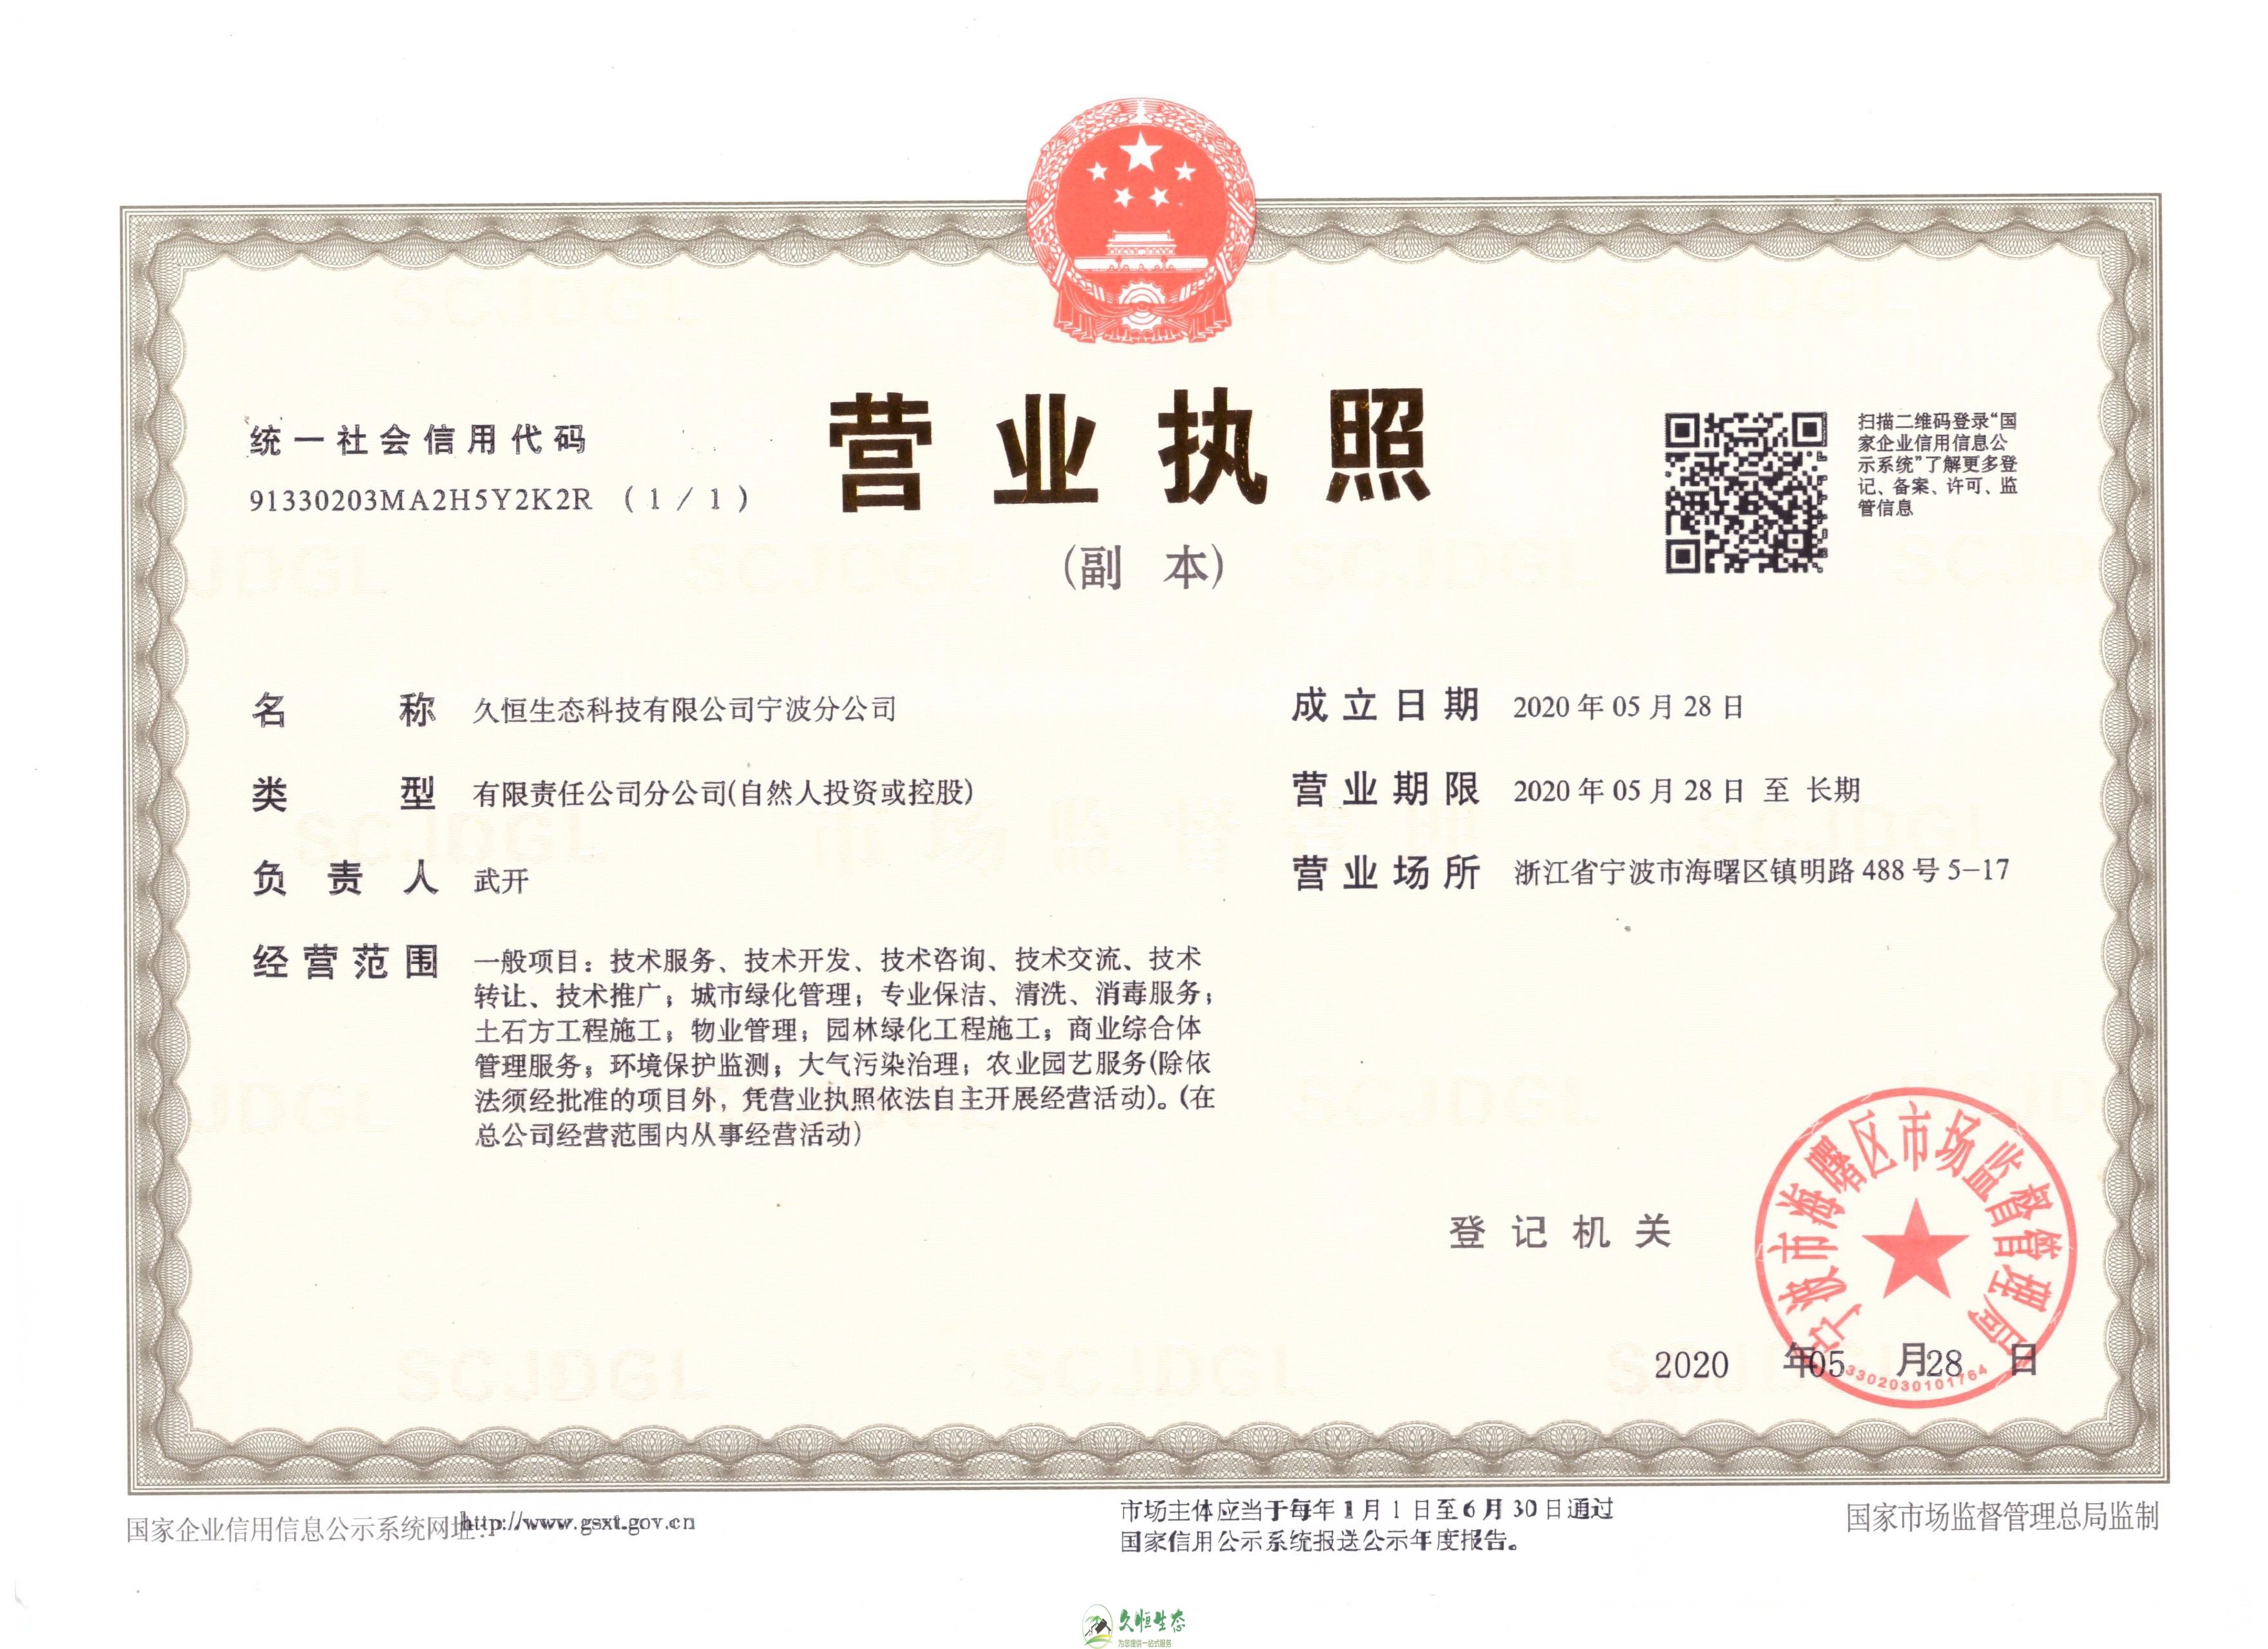 杭州西湖久恒生态宁波分公司2020年5月28日成立